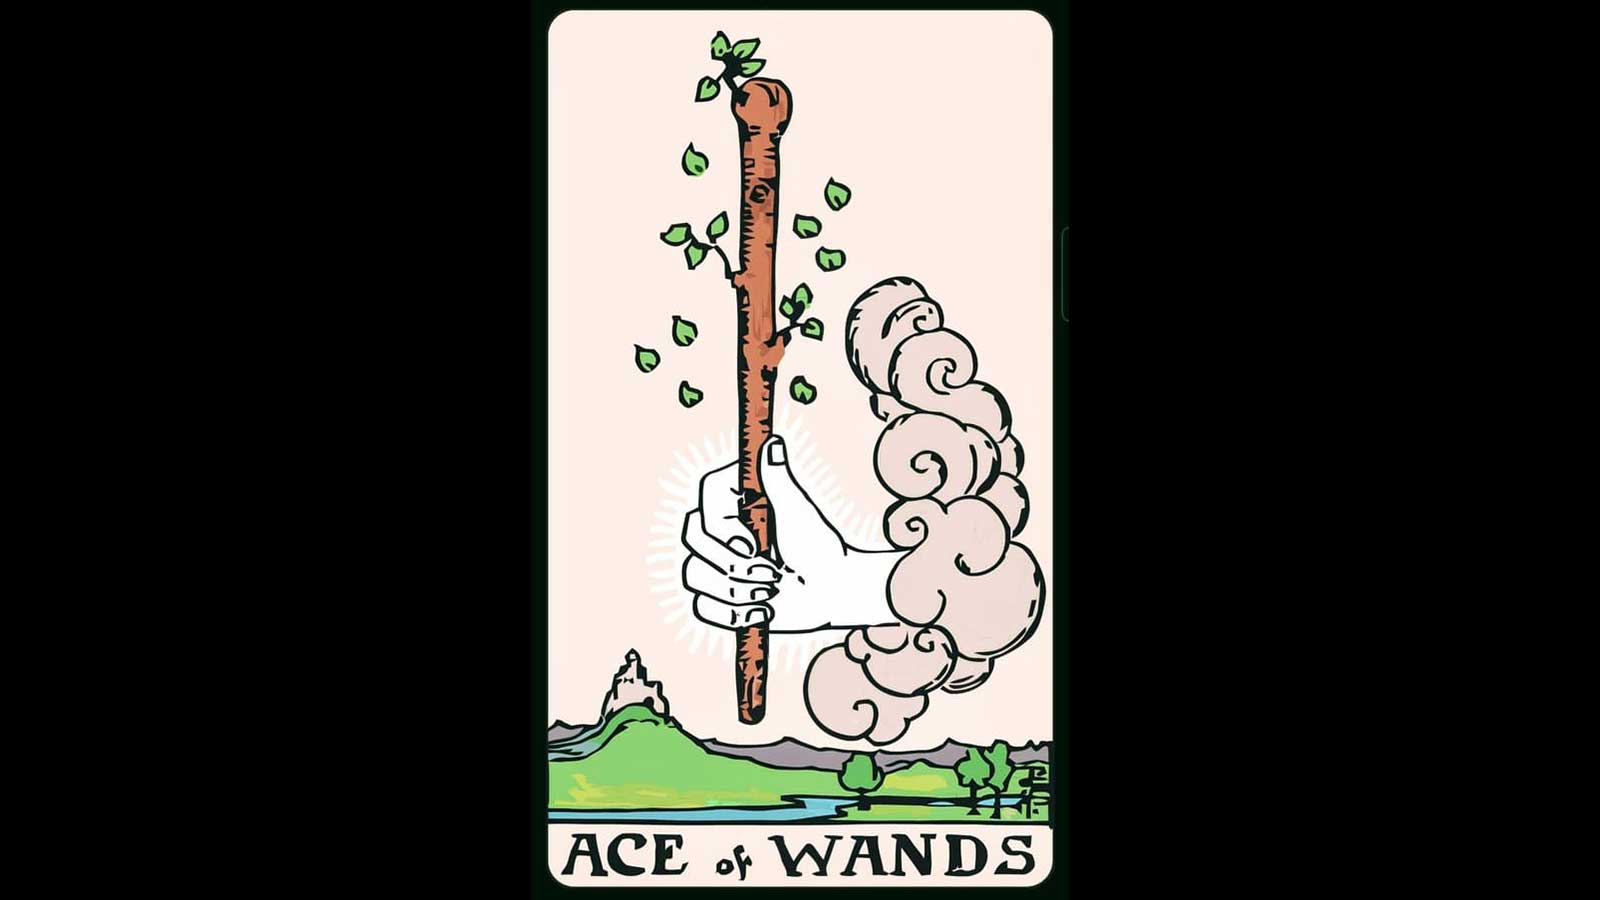 Ace of Wands ไพ่ 1 ไม้เท้า ความหมายไพ่ยิปซี ไพ่ทาโรต์ : อาจารย์เซียน